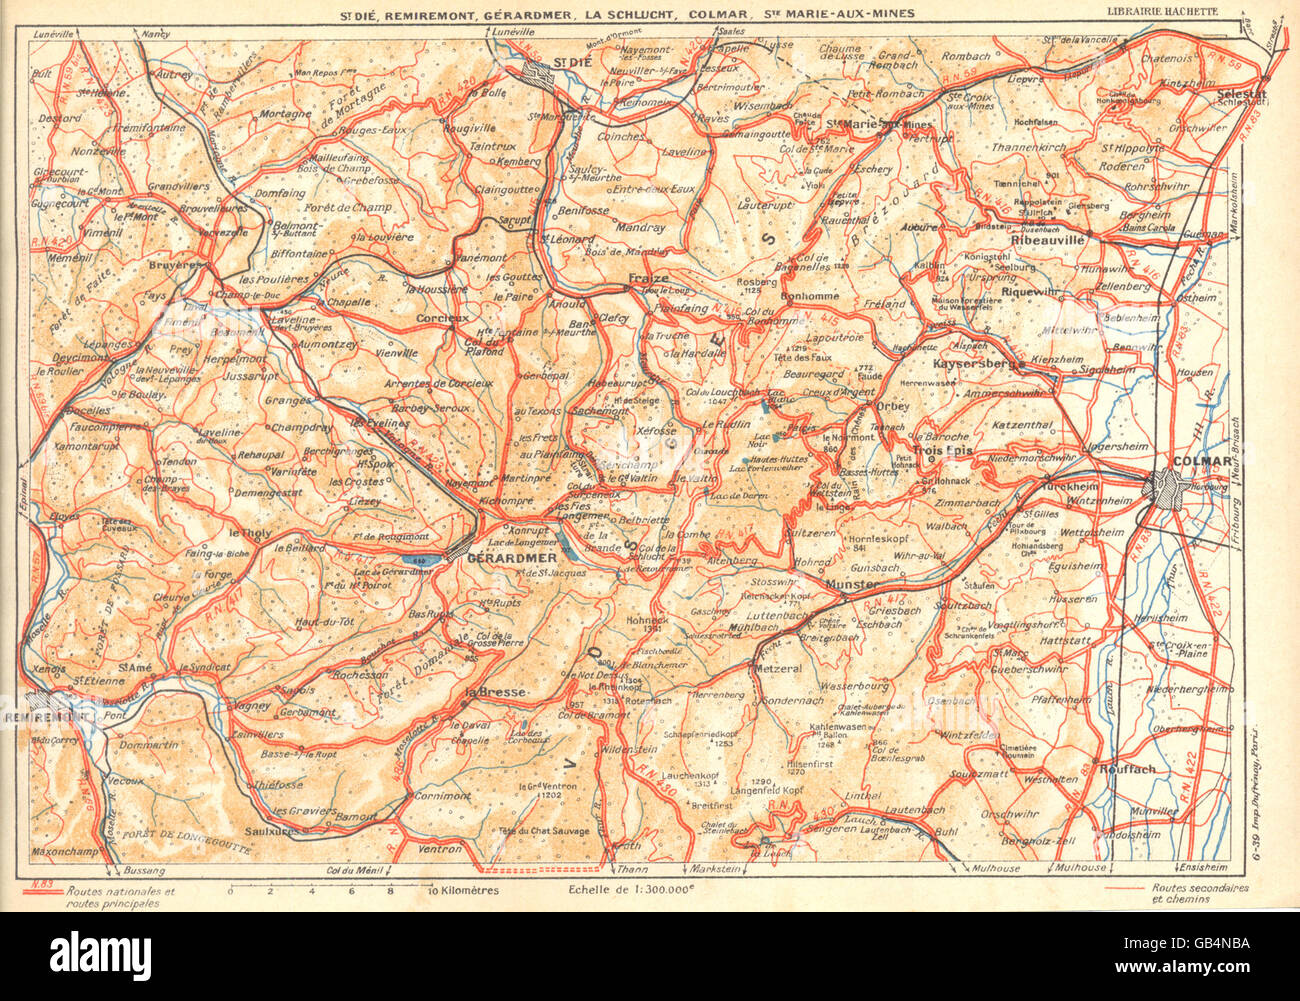 VOSGES:St.Dié,Remiremont, Gérardmer,Schlucht,Colmar,Ste Marie--Mines, 1939 map Banque D'Images